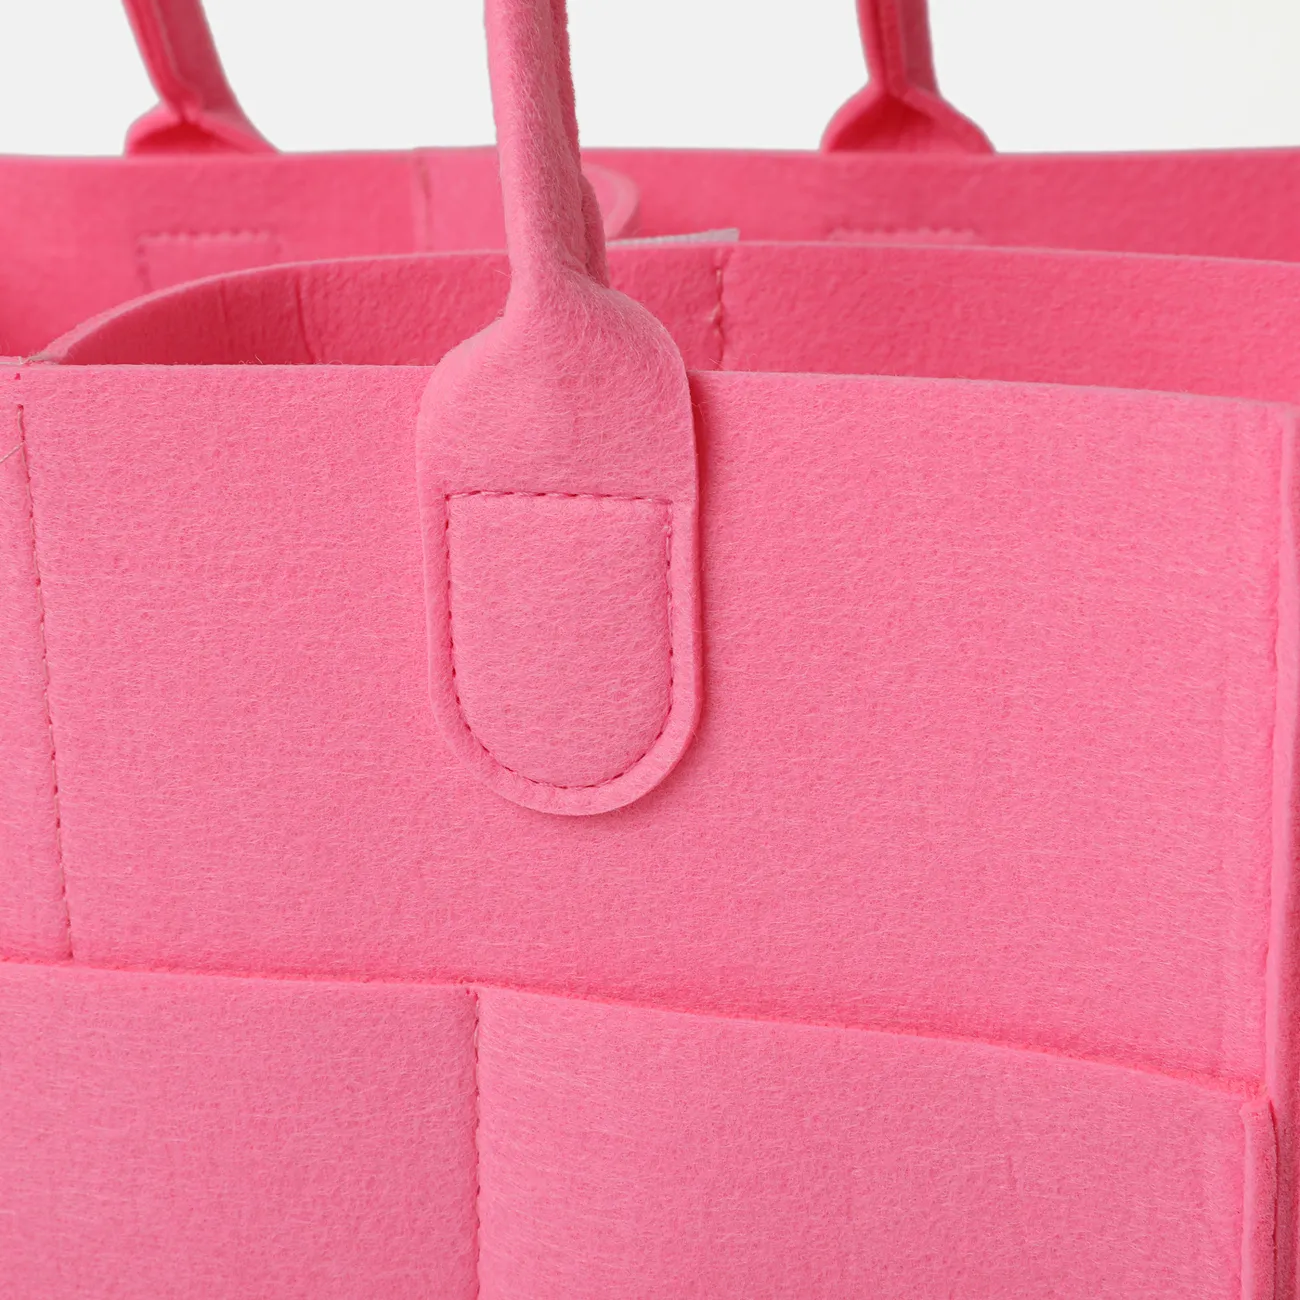 大號布料存儲容量尿布袋可折疊嬰兒大尺寸尿布架 粉色 big image 1